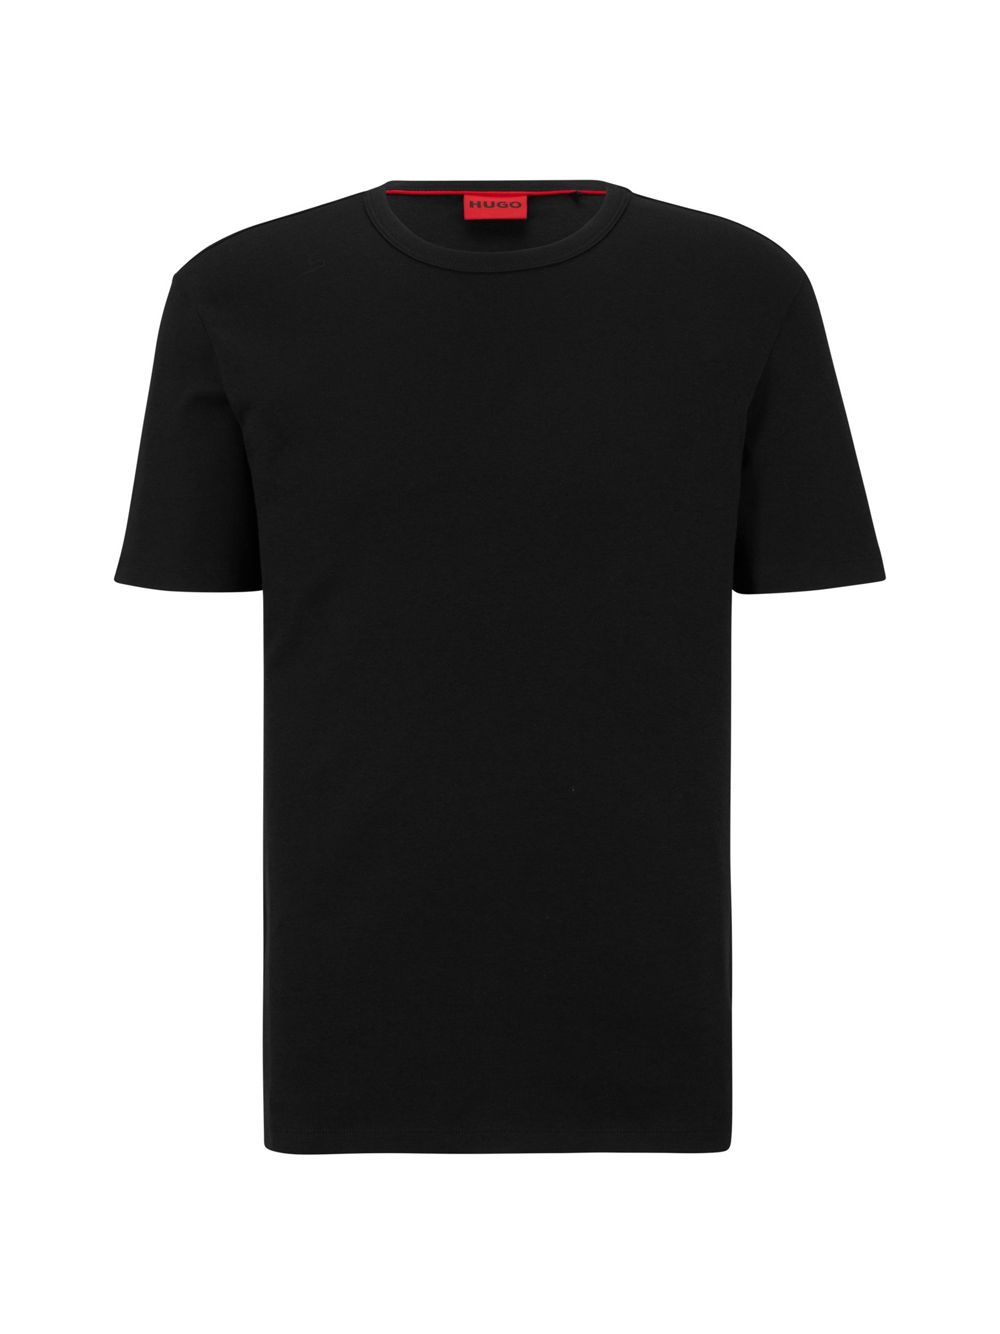 Футболка Pima-Cotton Regular Fit с контрастным логотипом HUGO, черный футболка hugo pima cotton regular fit with contrast logo чёрный